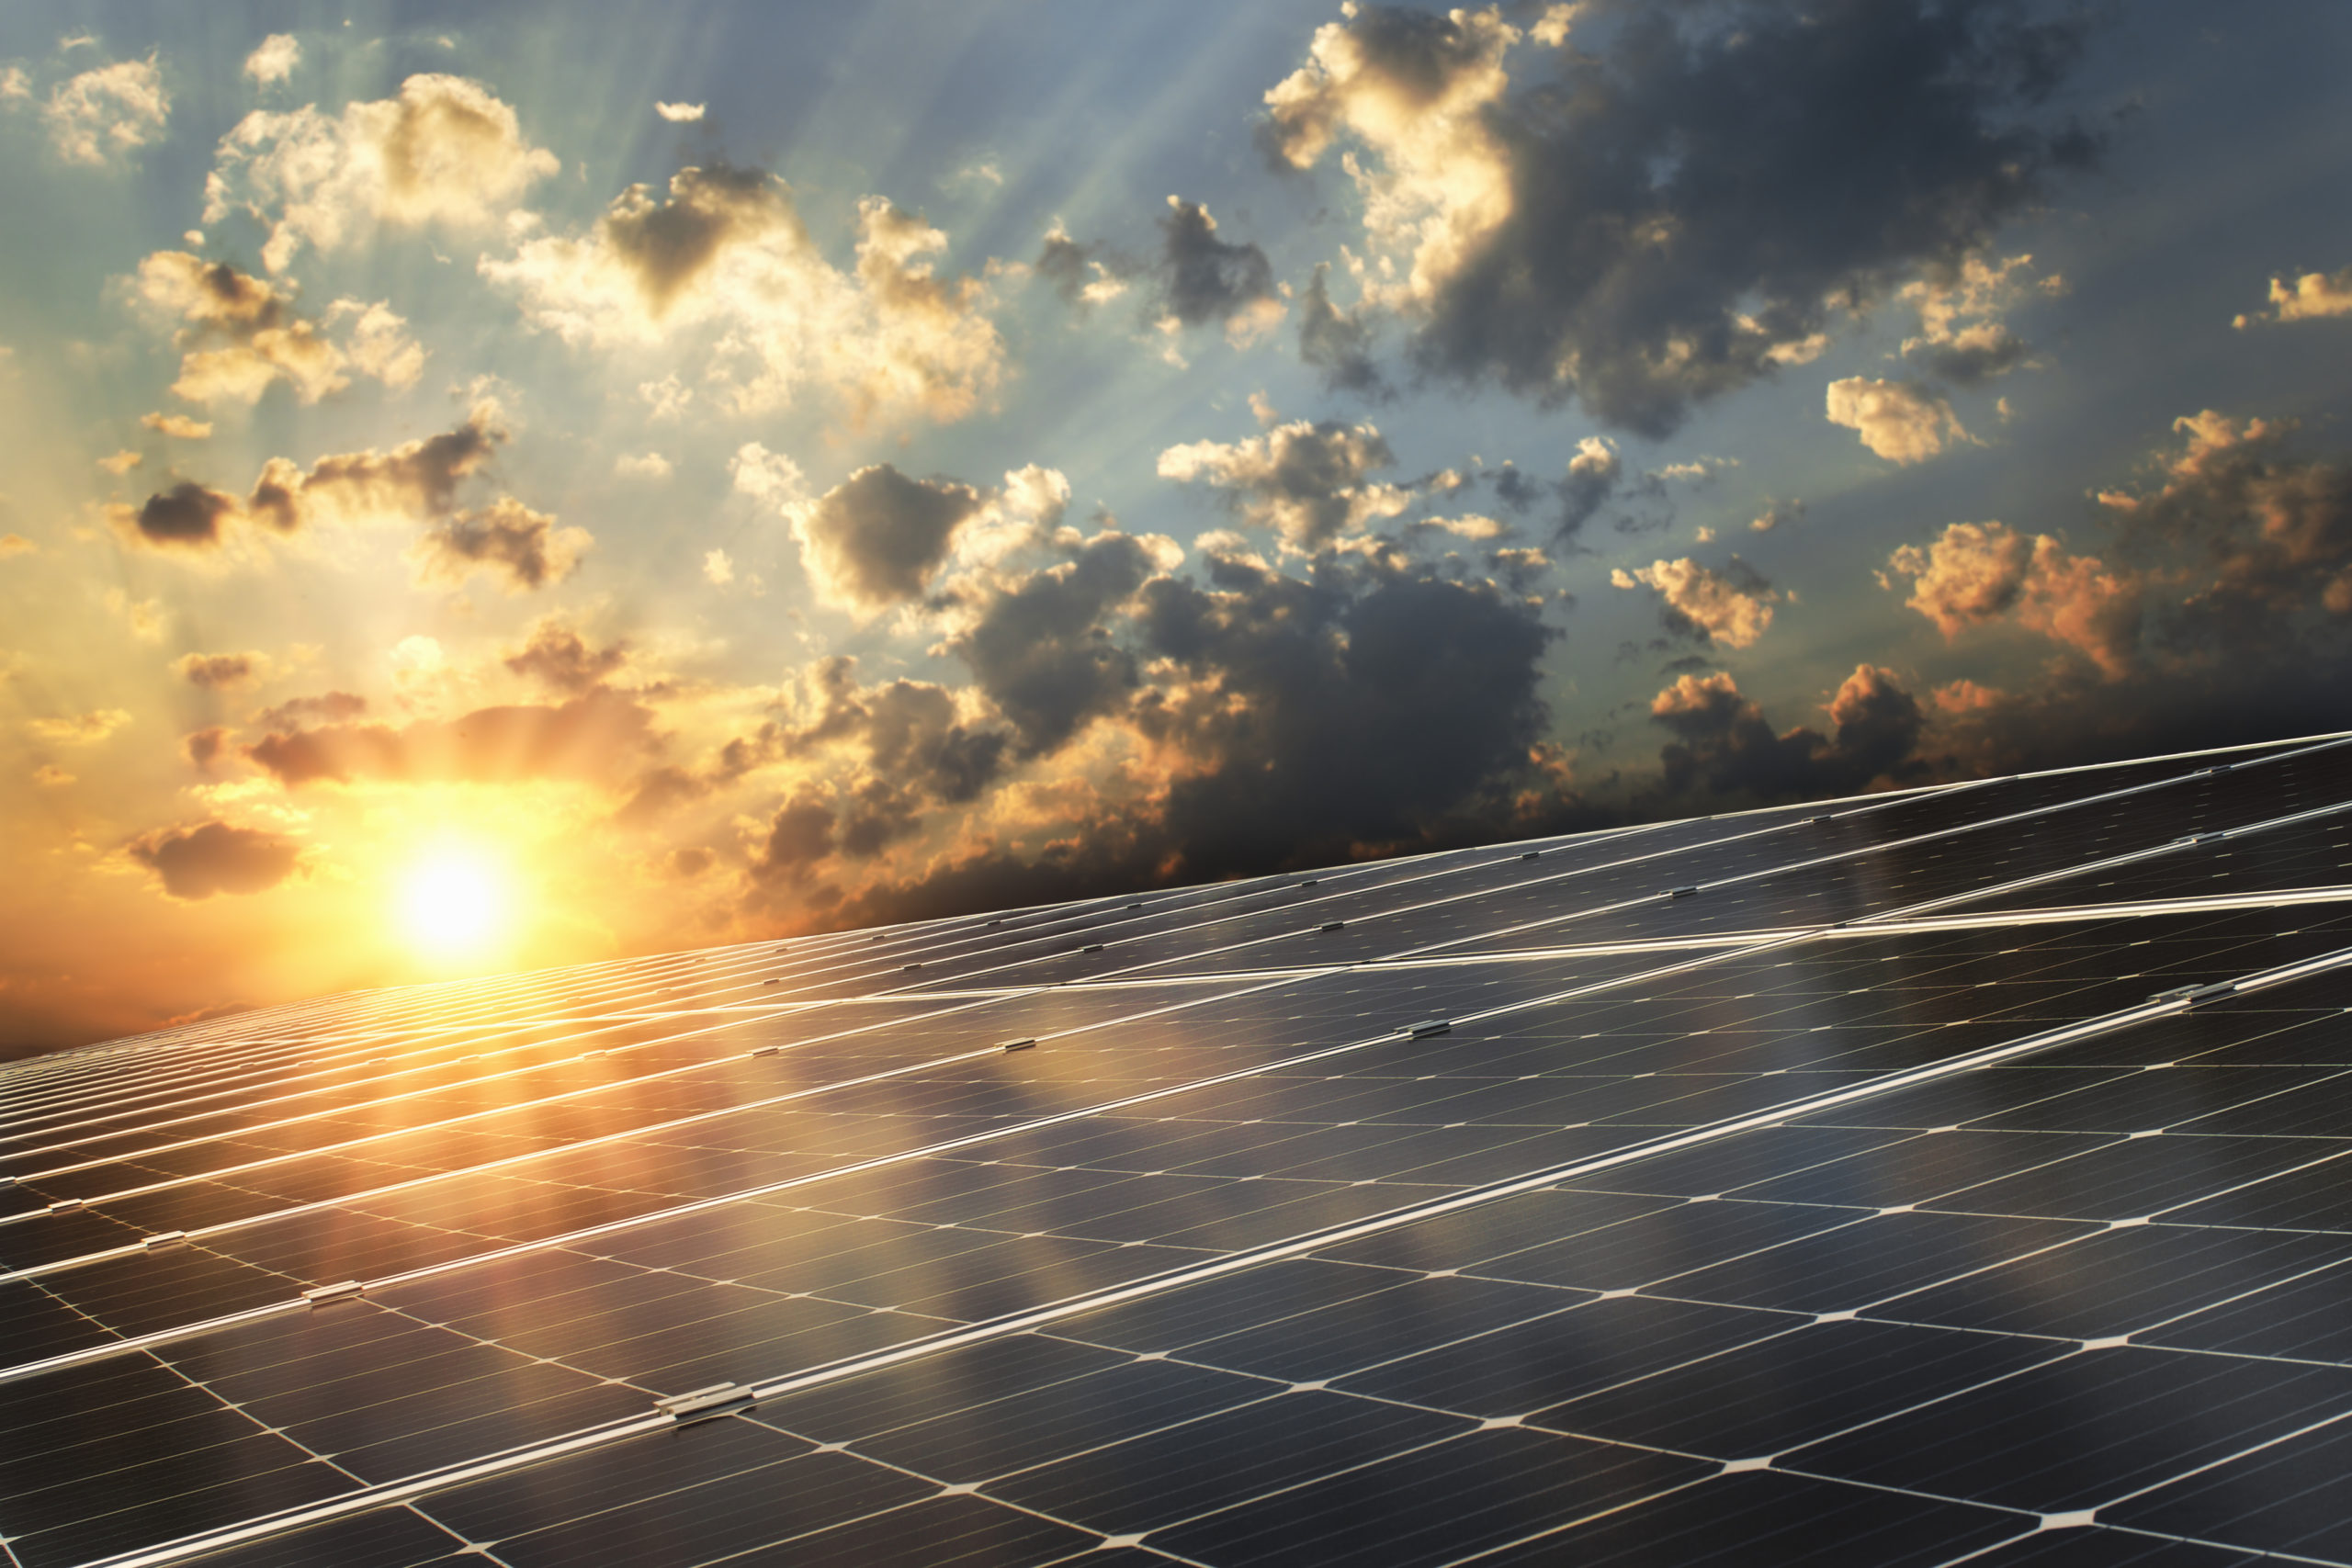 solaire-energie-panneaux-photovoltaique-sunteam-installation-energie-verte-montelimar